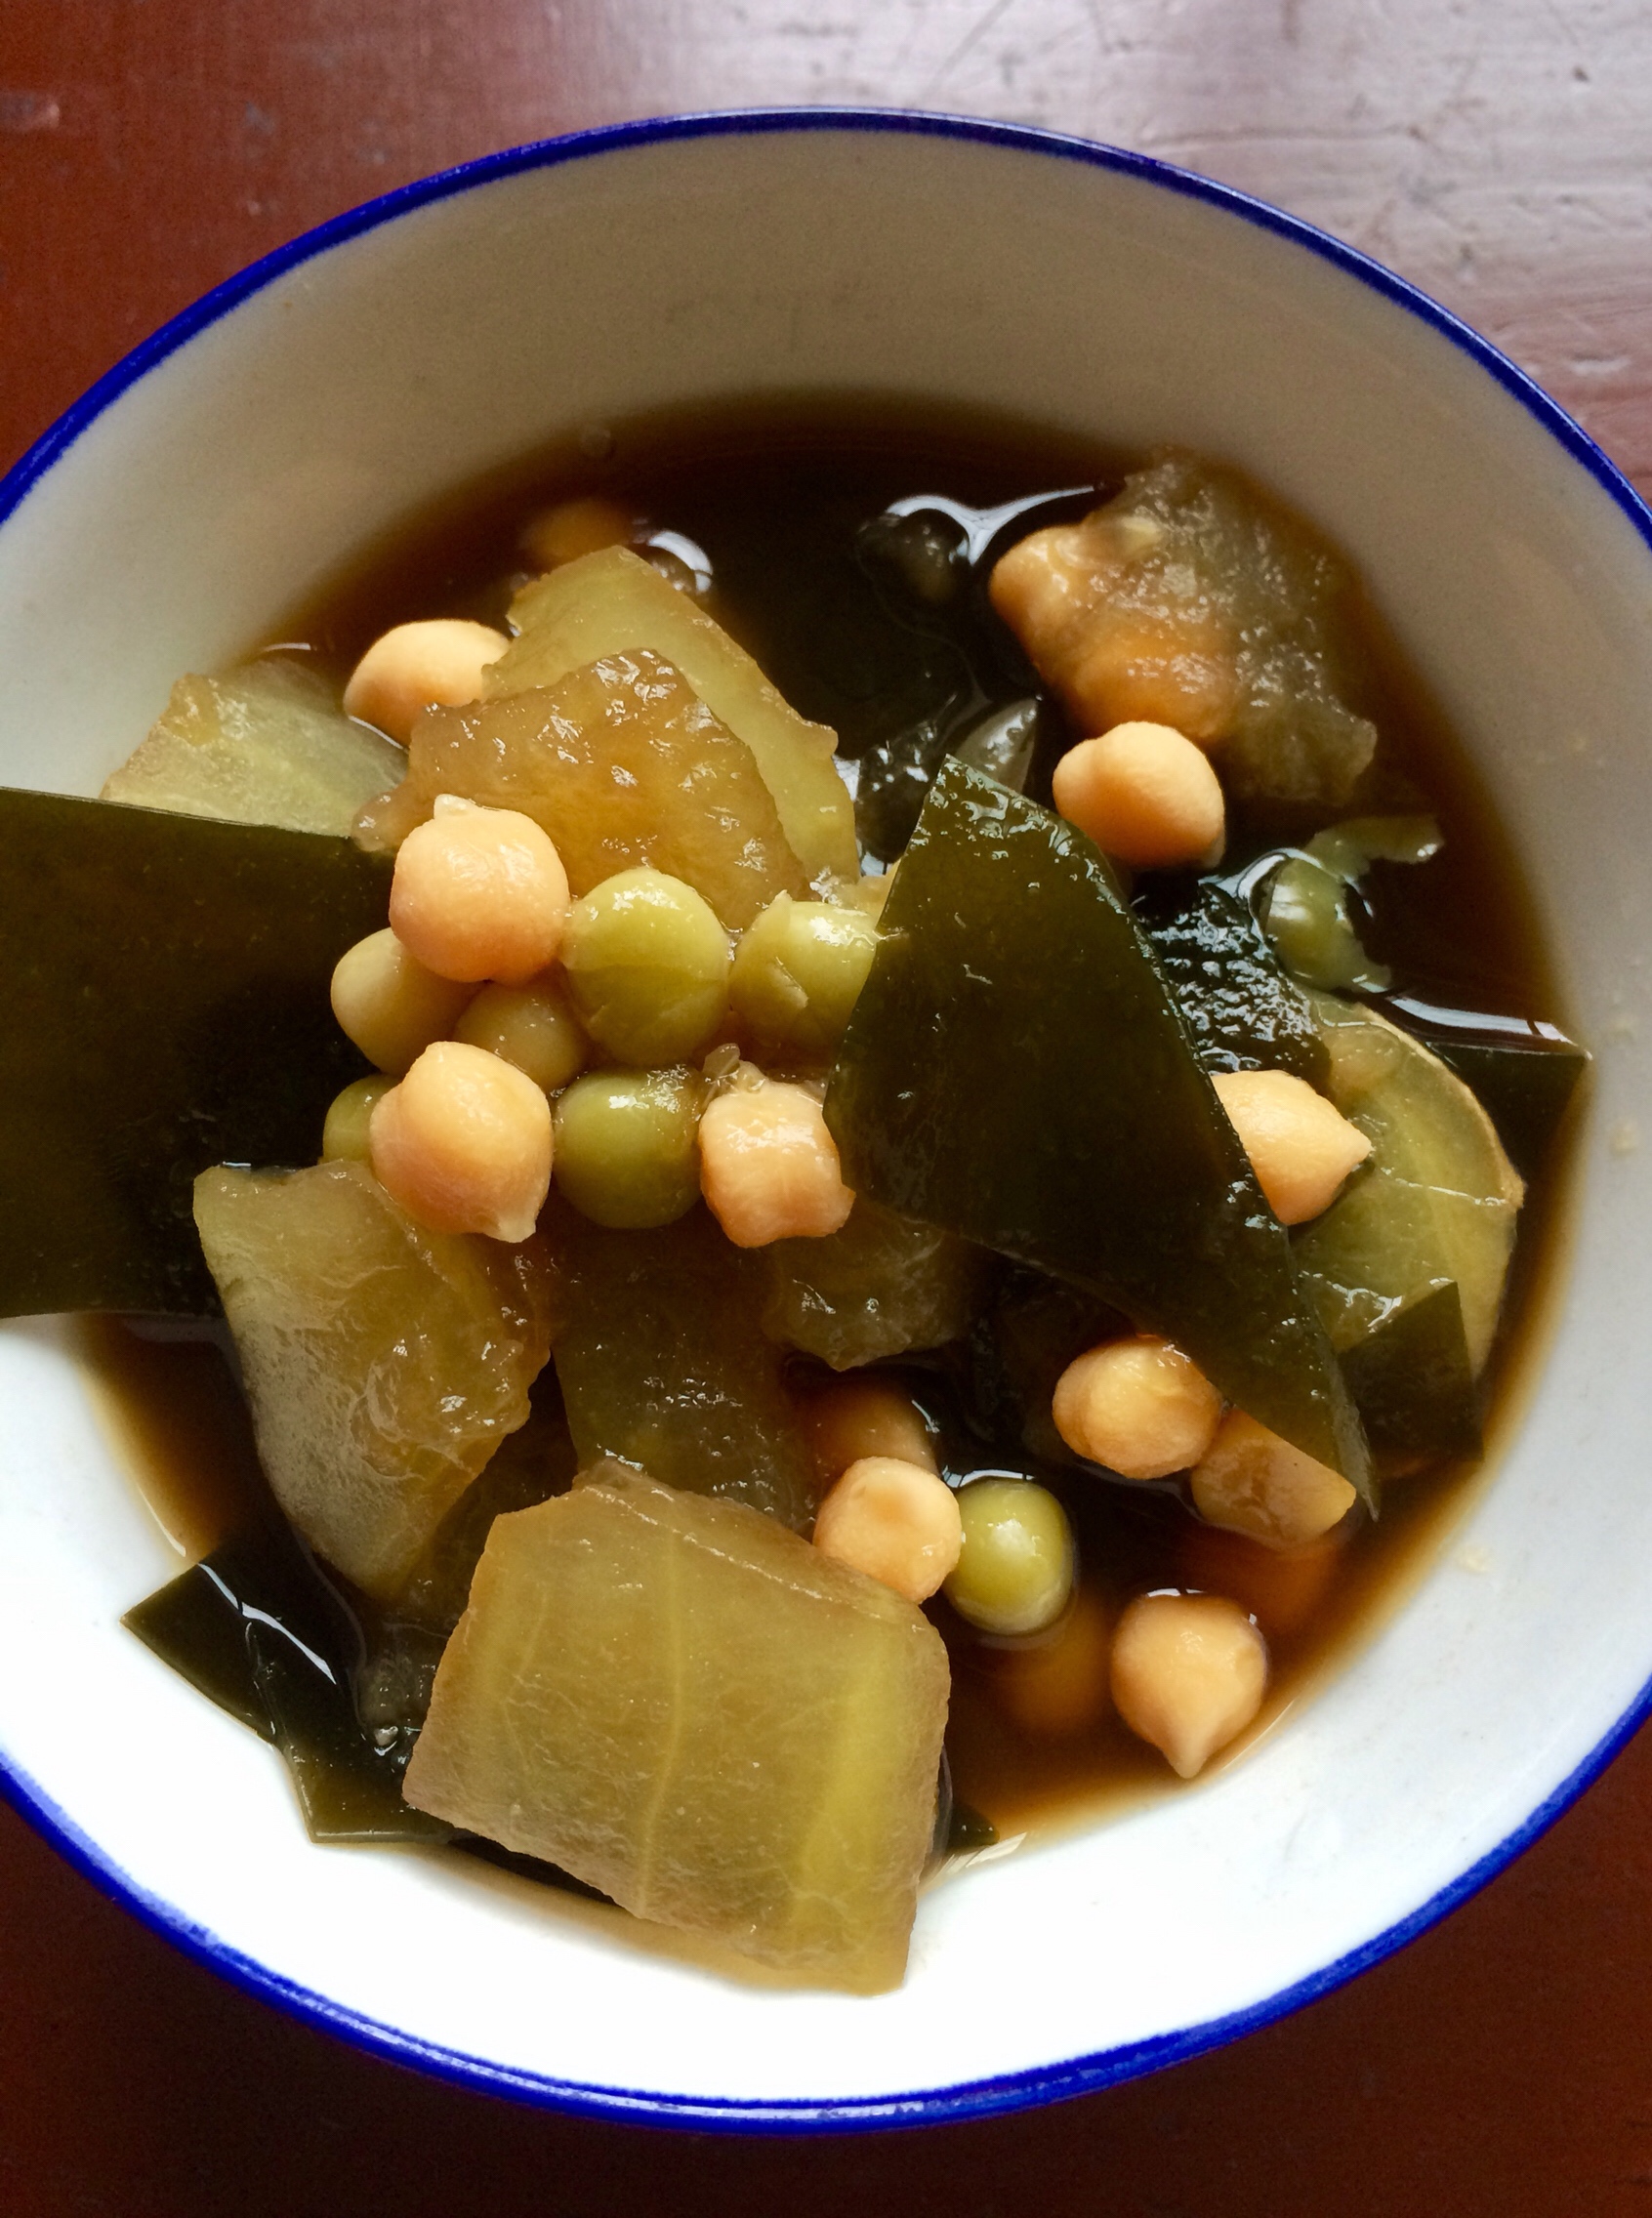 冬瓜海带低脂豆汤 鹰嘴豆豌豆吊汤 减肥 的做法步骤图 悠然 低脂纯素 下厨房